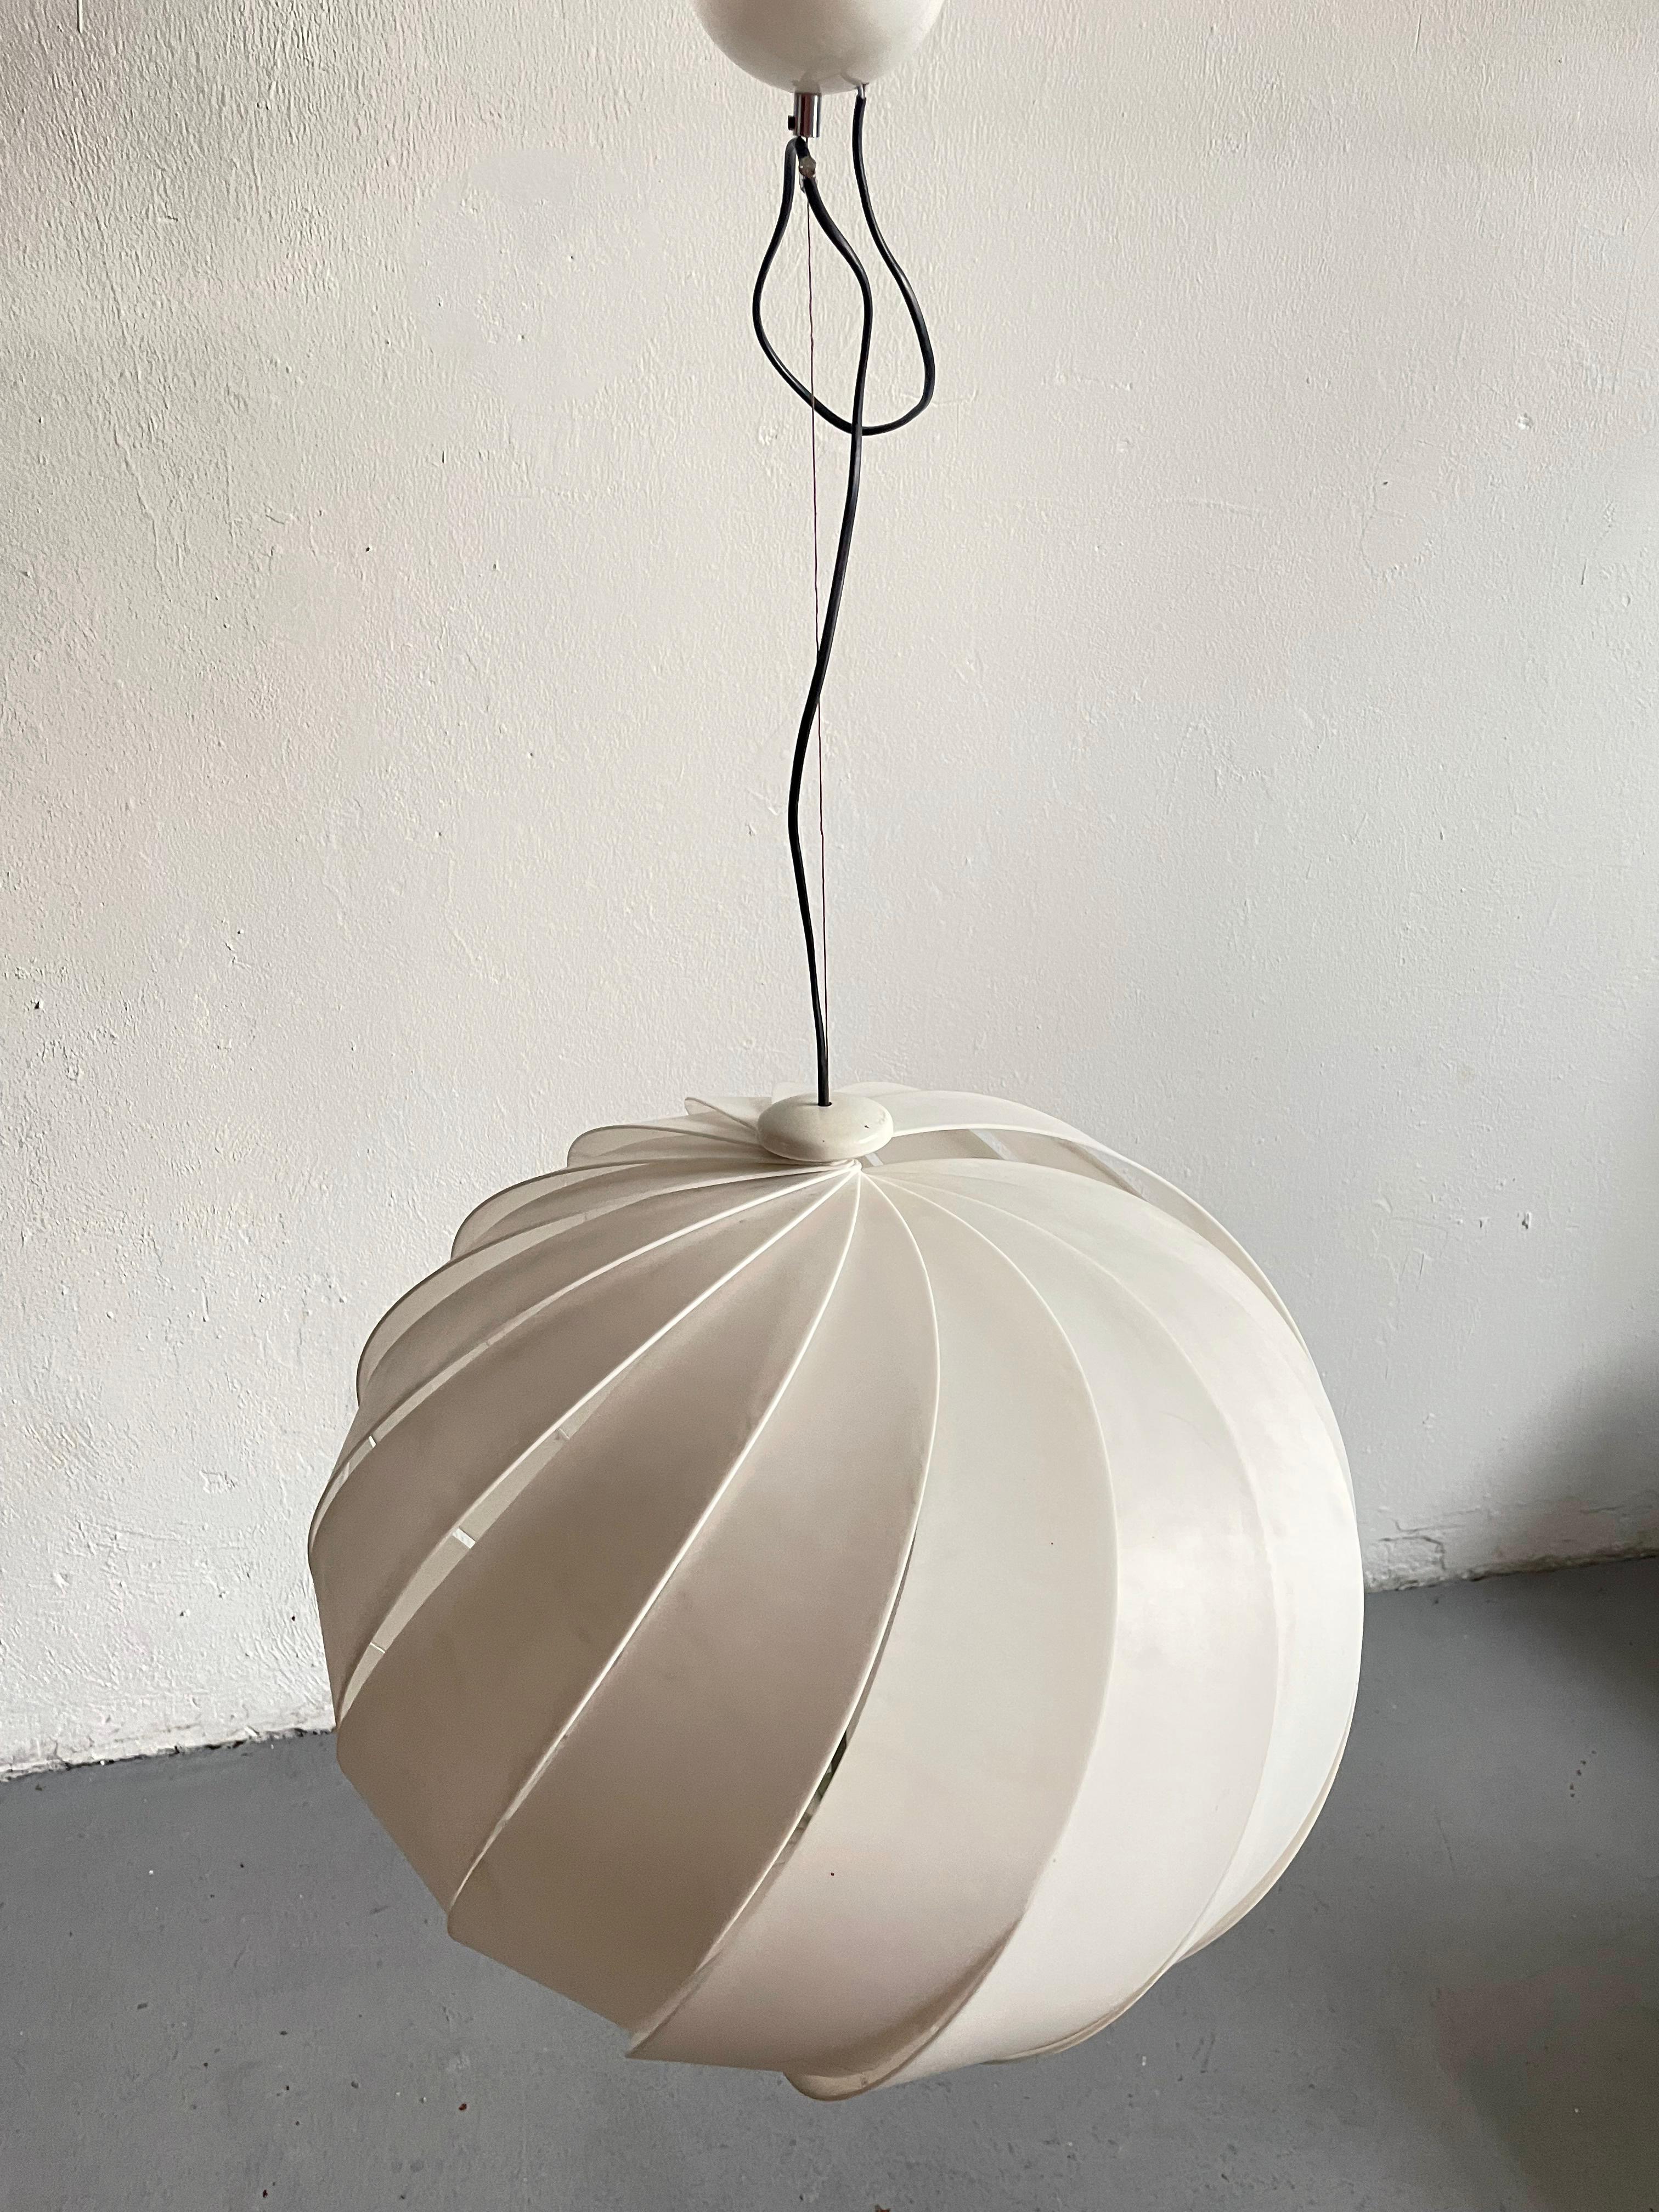 Italian Alicante Suspension Lamp by Emanuele Ponzio for Guzzini, 1960s For Sale